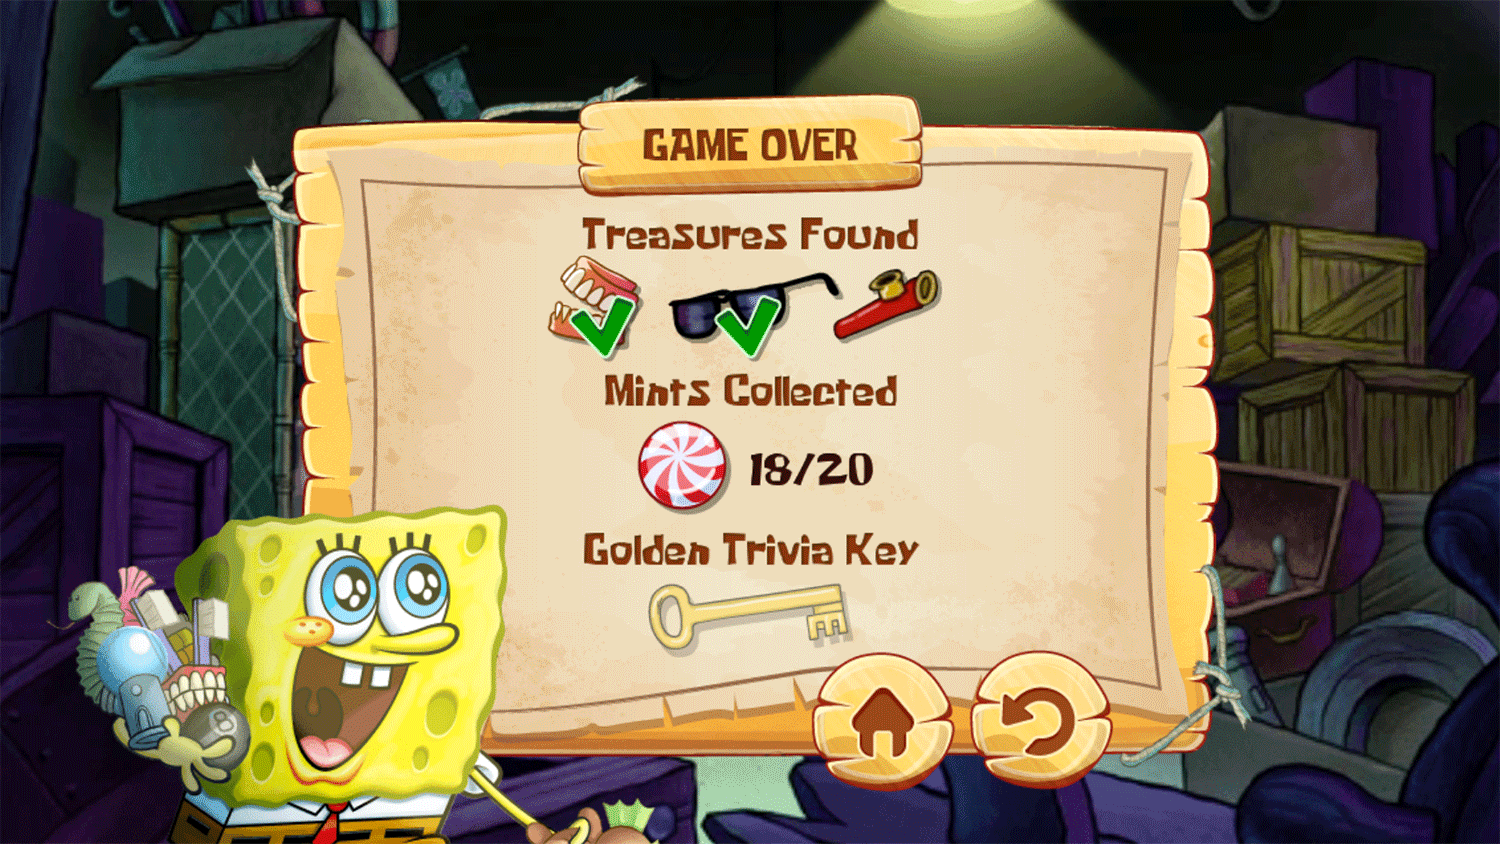 Spongebob Squarepants Lost Treasures Result Screenshot.